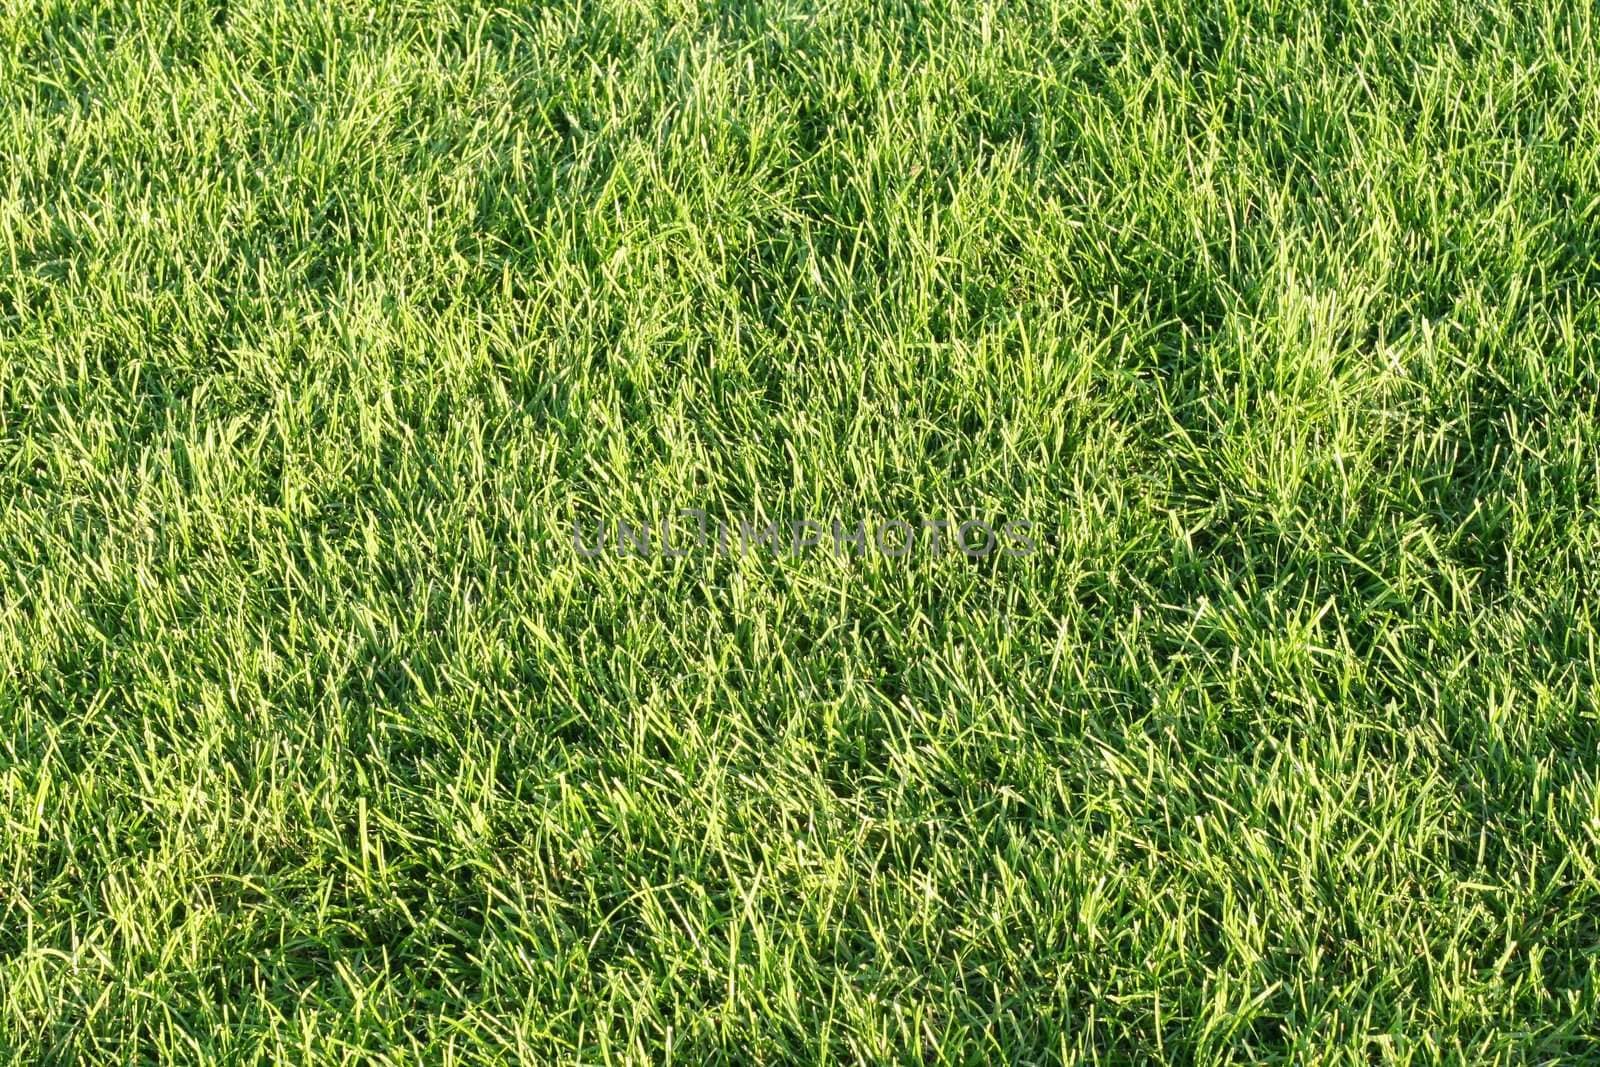 Green grassy lawn